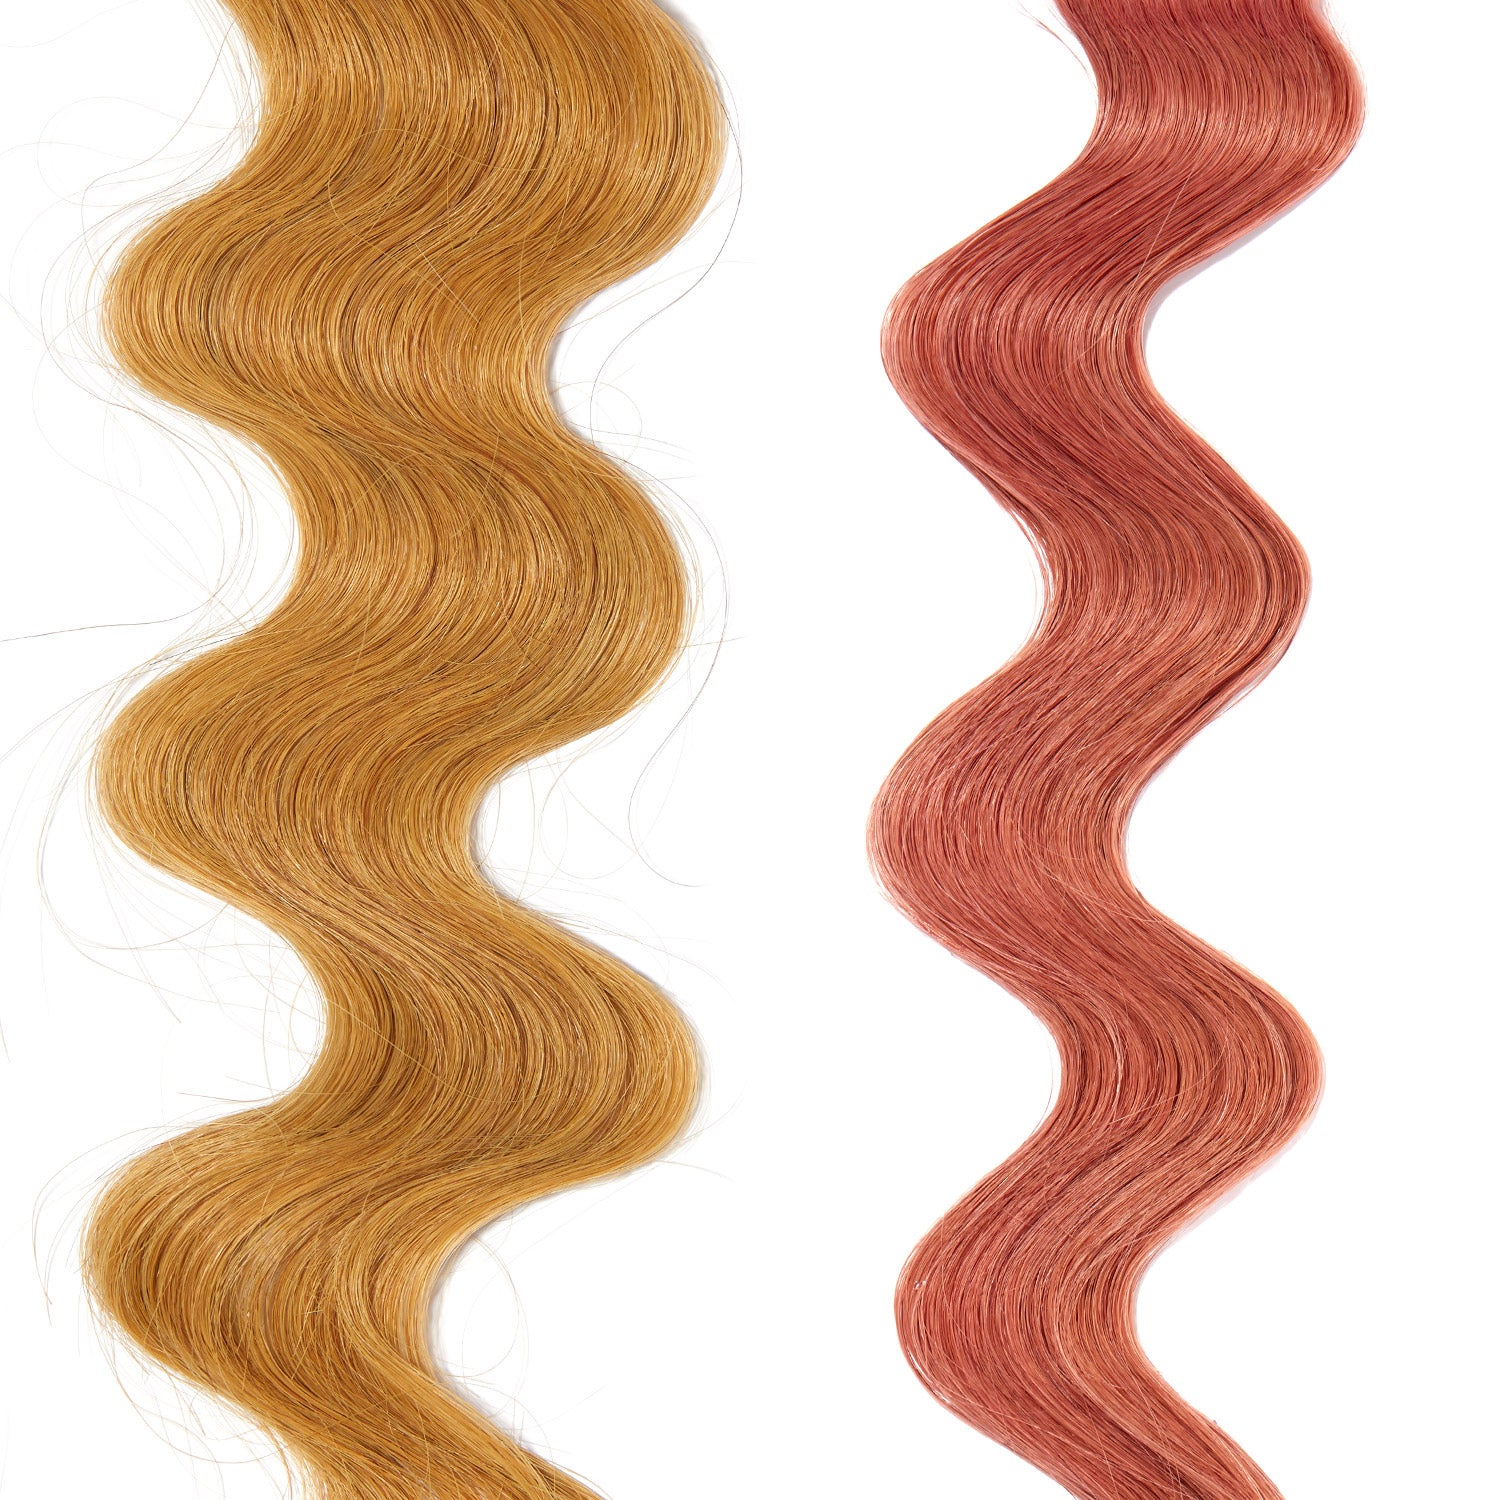 1 dry rose printed hair loop